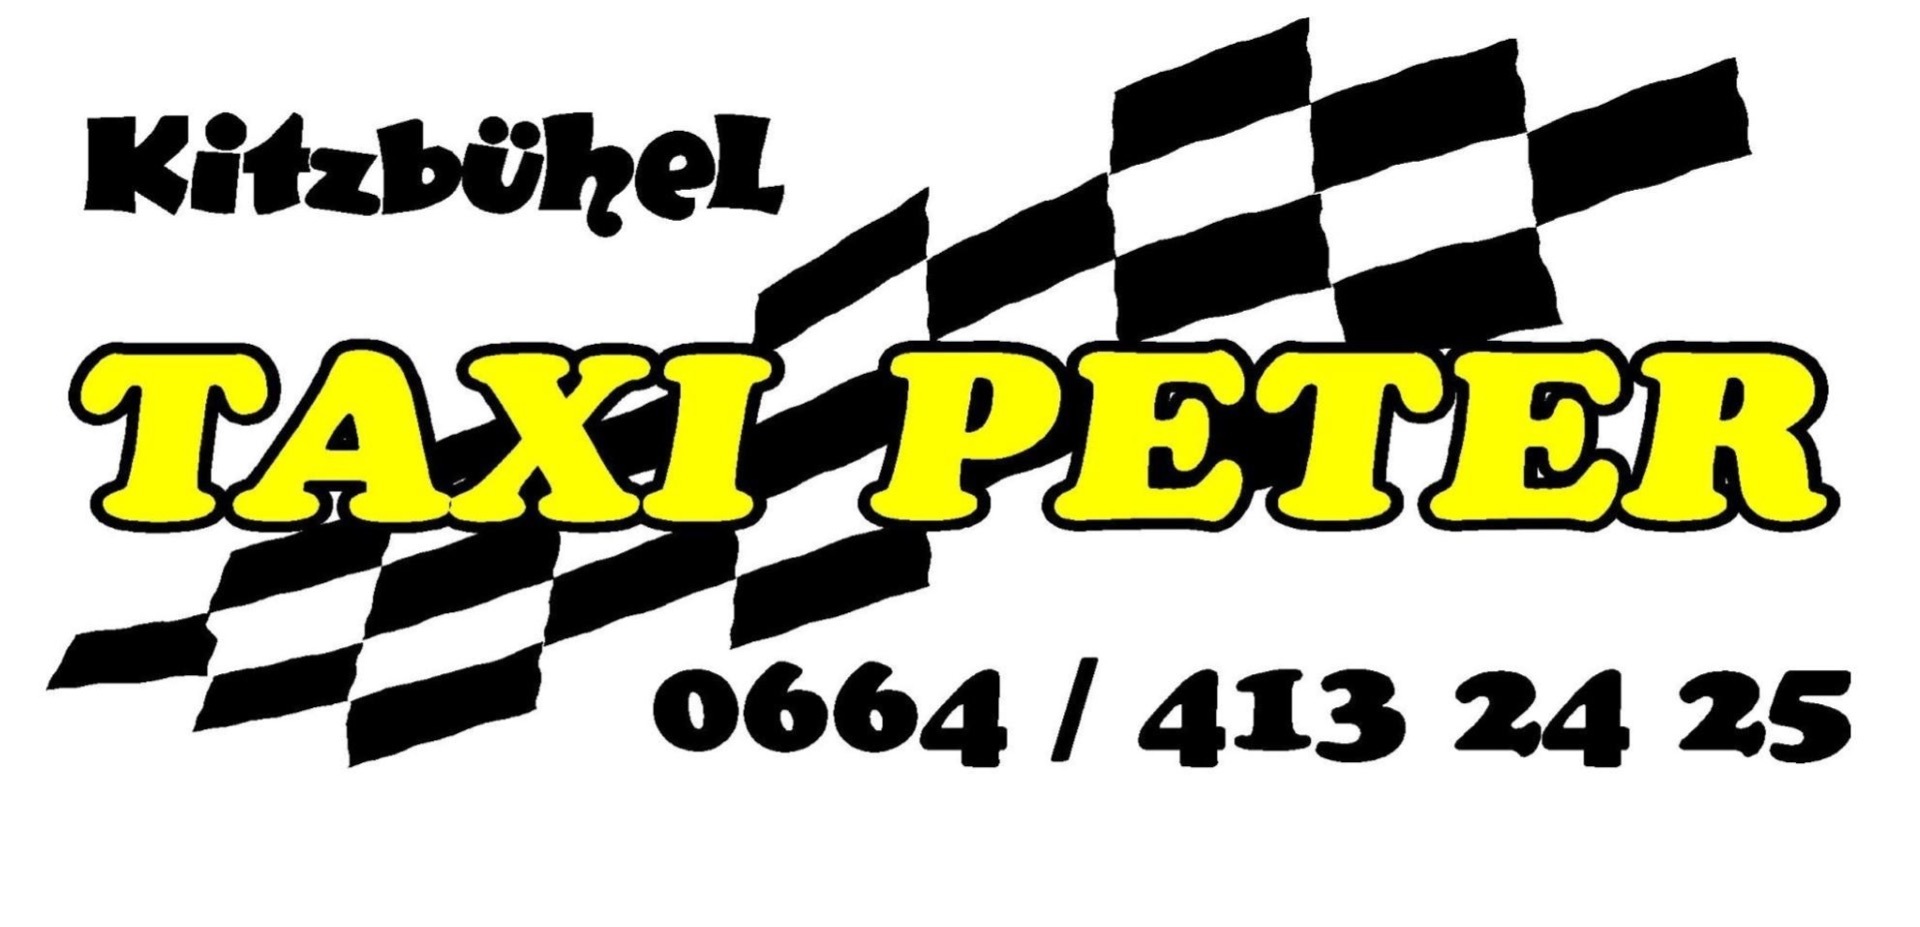 (c) Taxi-peter.at